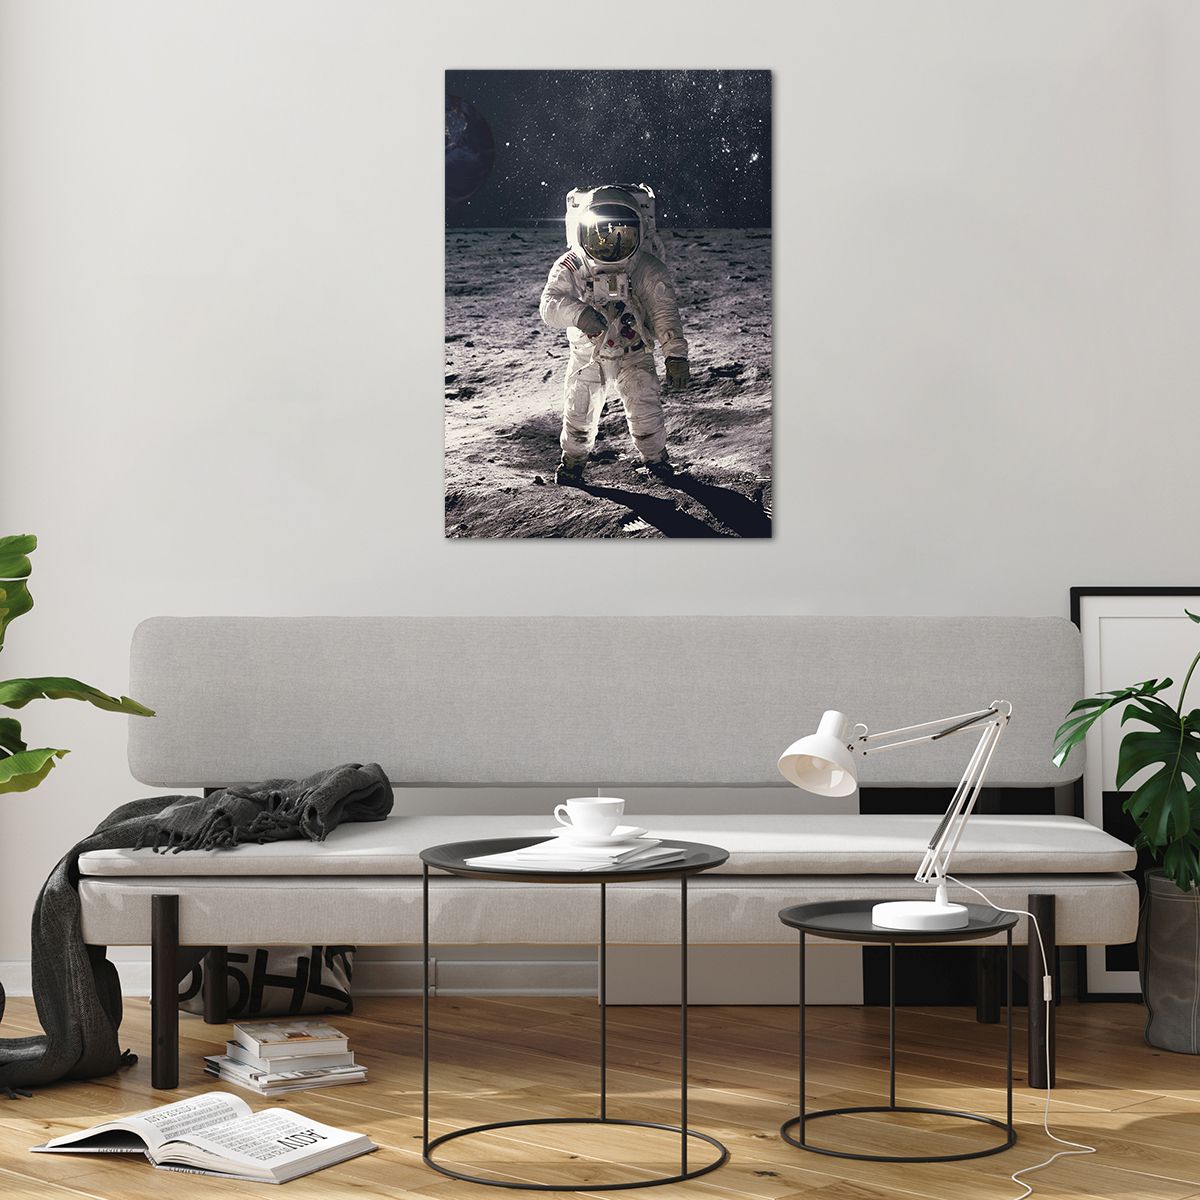 Bilder auf glas Abstraktion, Bilder auf glas Mann Im Mond, Bilder auf glas Astronaut, Bilder auf glas Kosmos, Bilder auf glas Mond